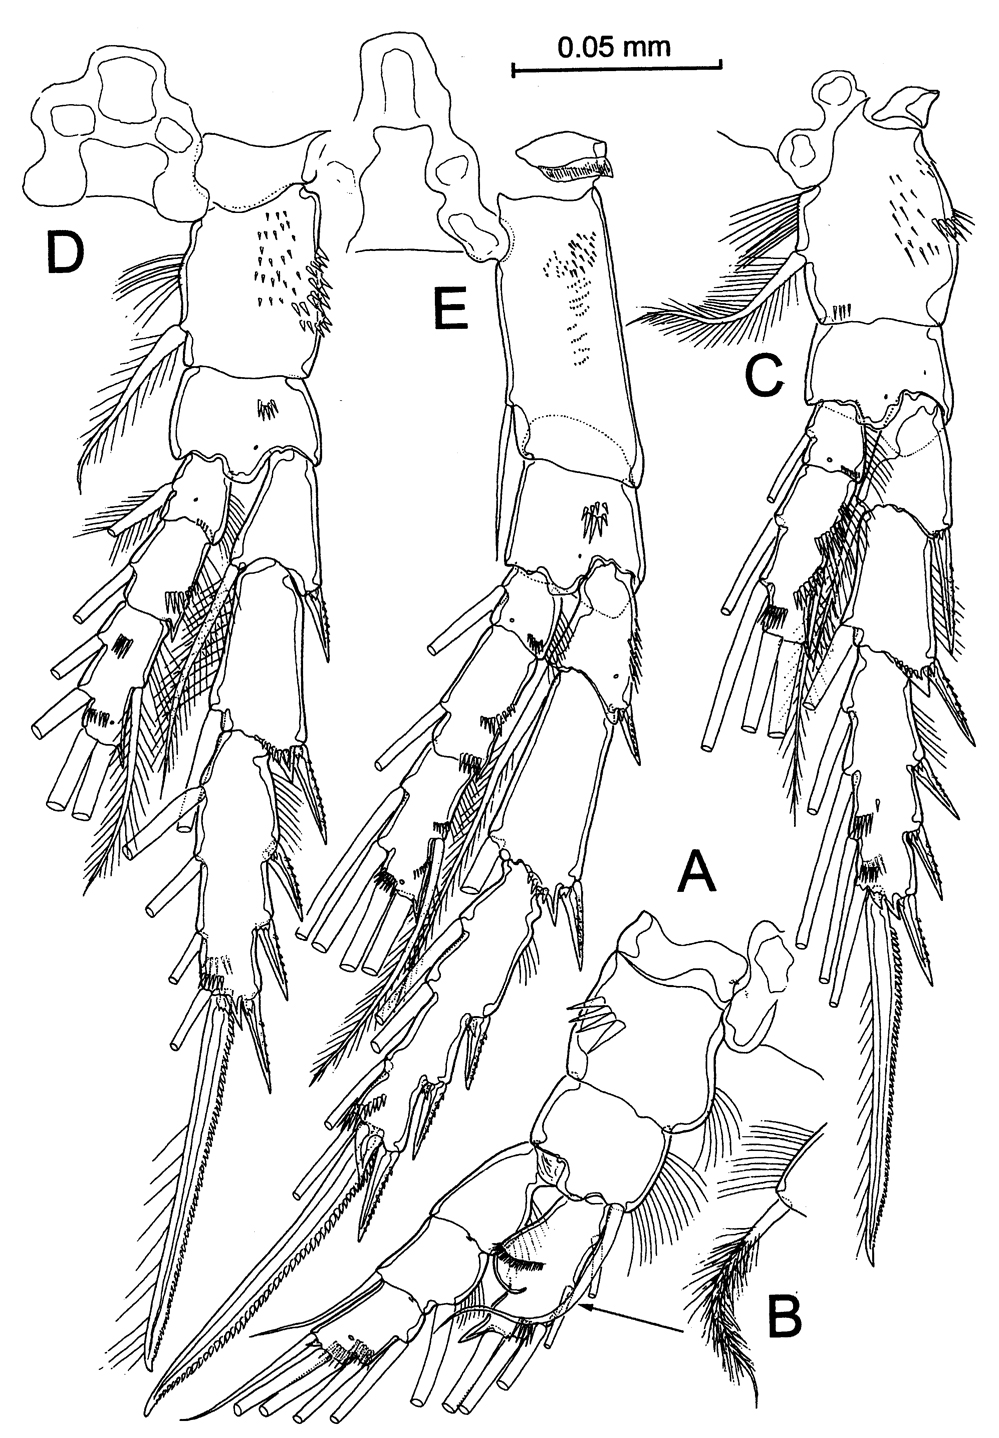 Espce Stephos margalefi - Planche 8 de figures morphologiques